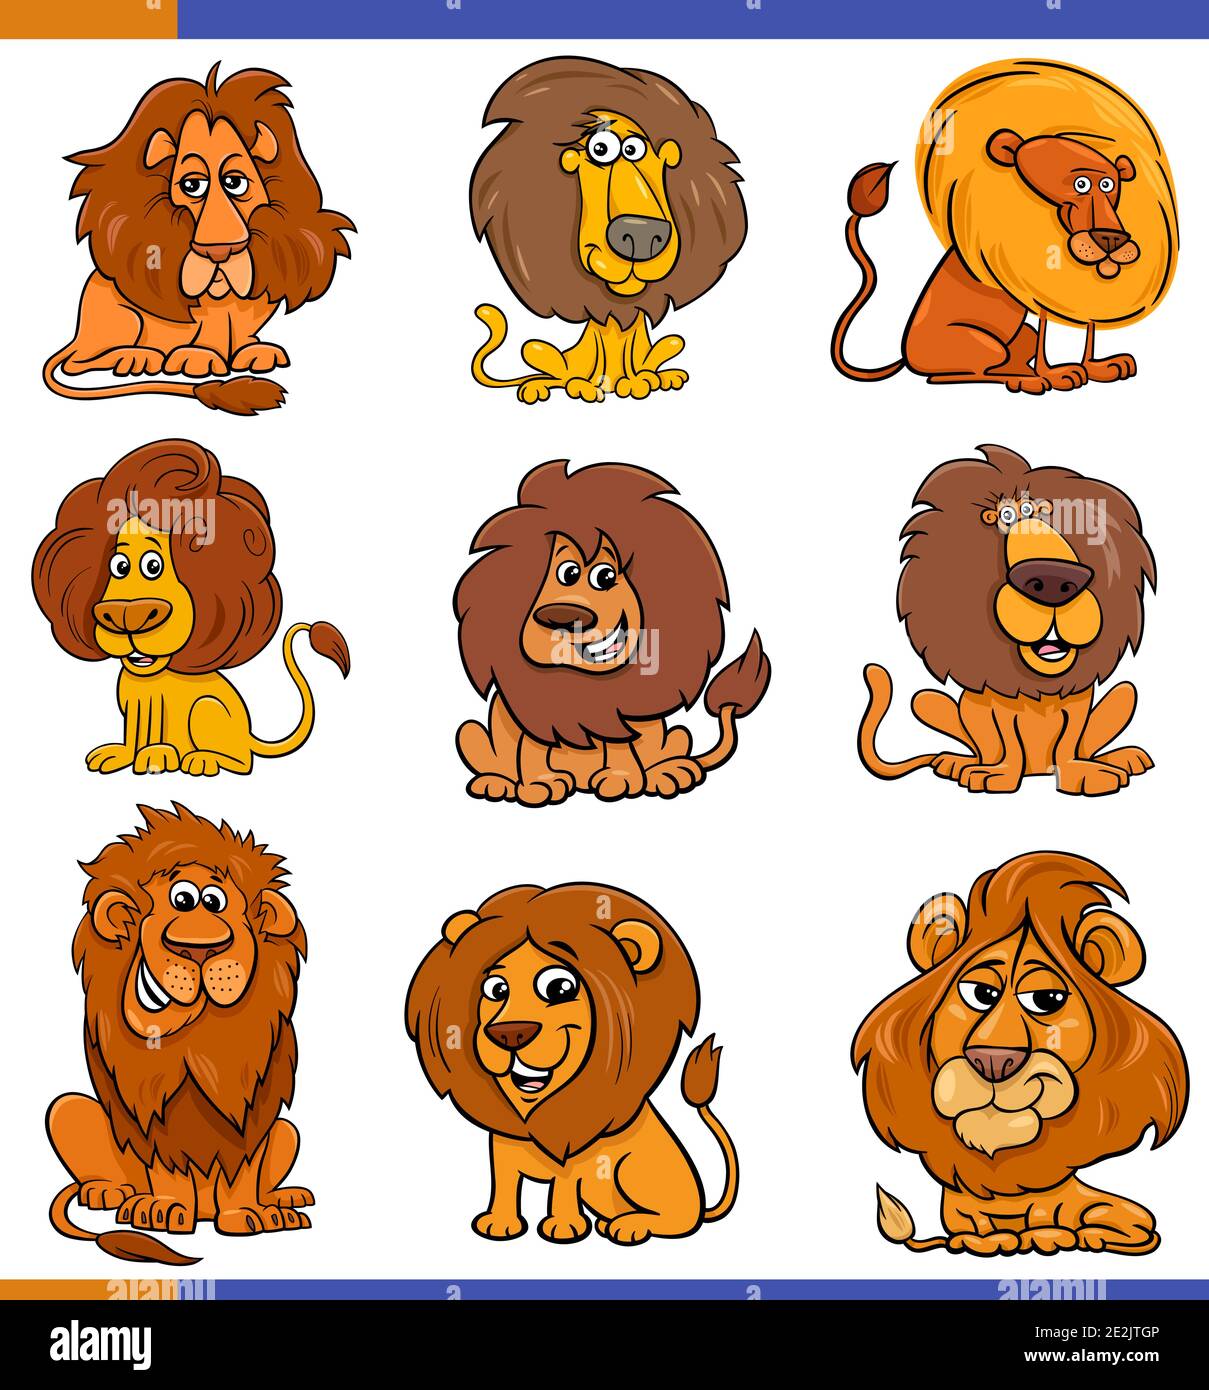 Dibujo de dibujos animados de leones cómics animales salvajes conjunto de personajes Ilustración del Vector